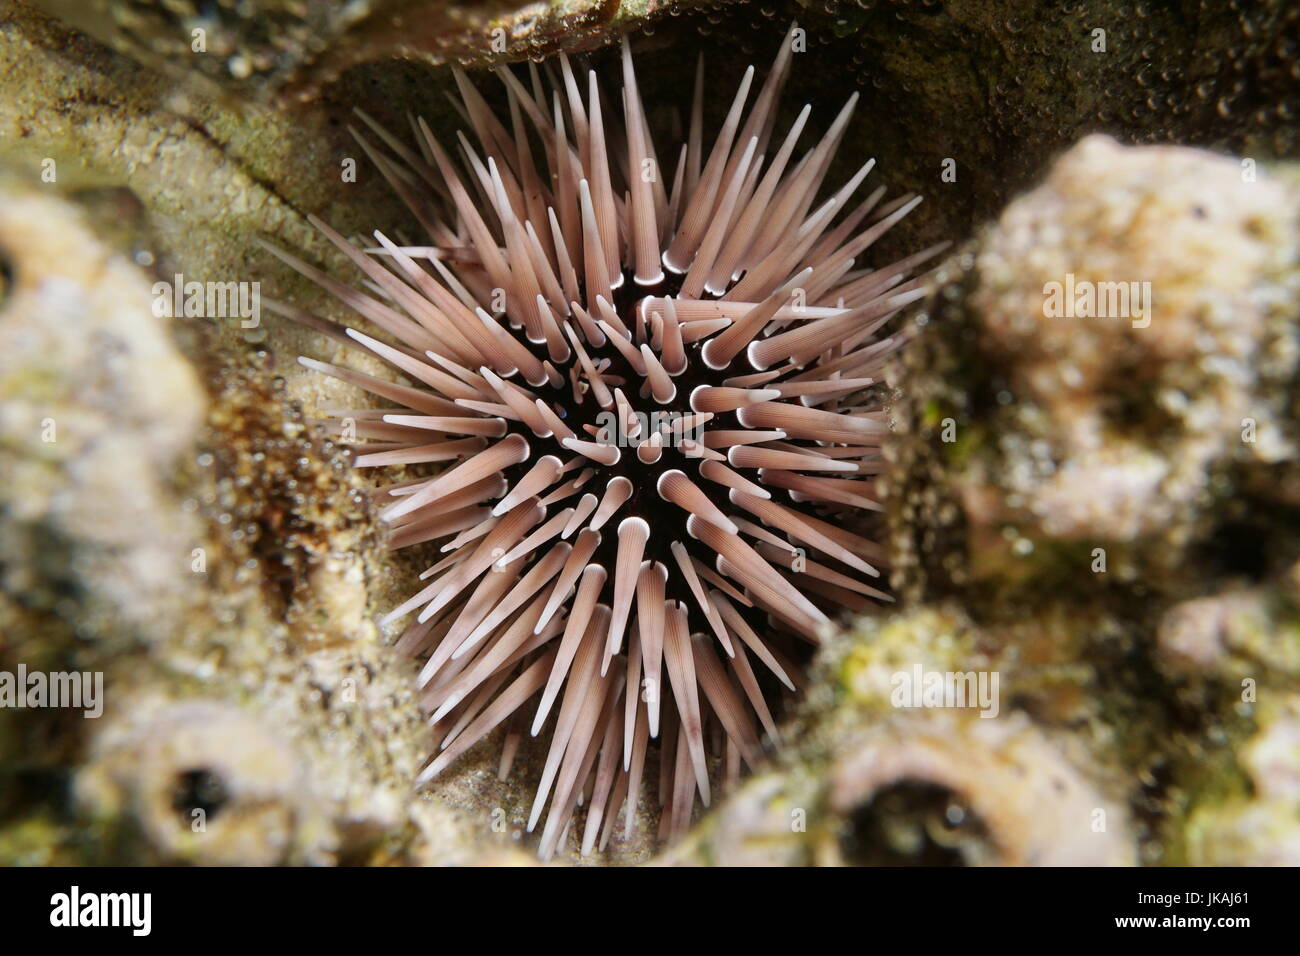 Eine grabende Urchin Echinometra Mathaei, unter Wasser versteckt in ein Loch in die Korallen, Lagune von Bora Bora, Pazifik, Französisch-Polynesien Stockfoto